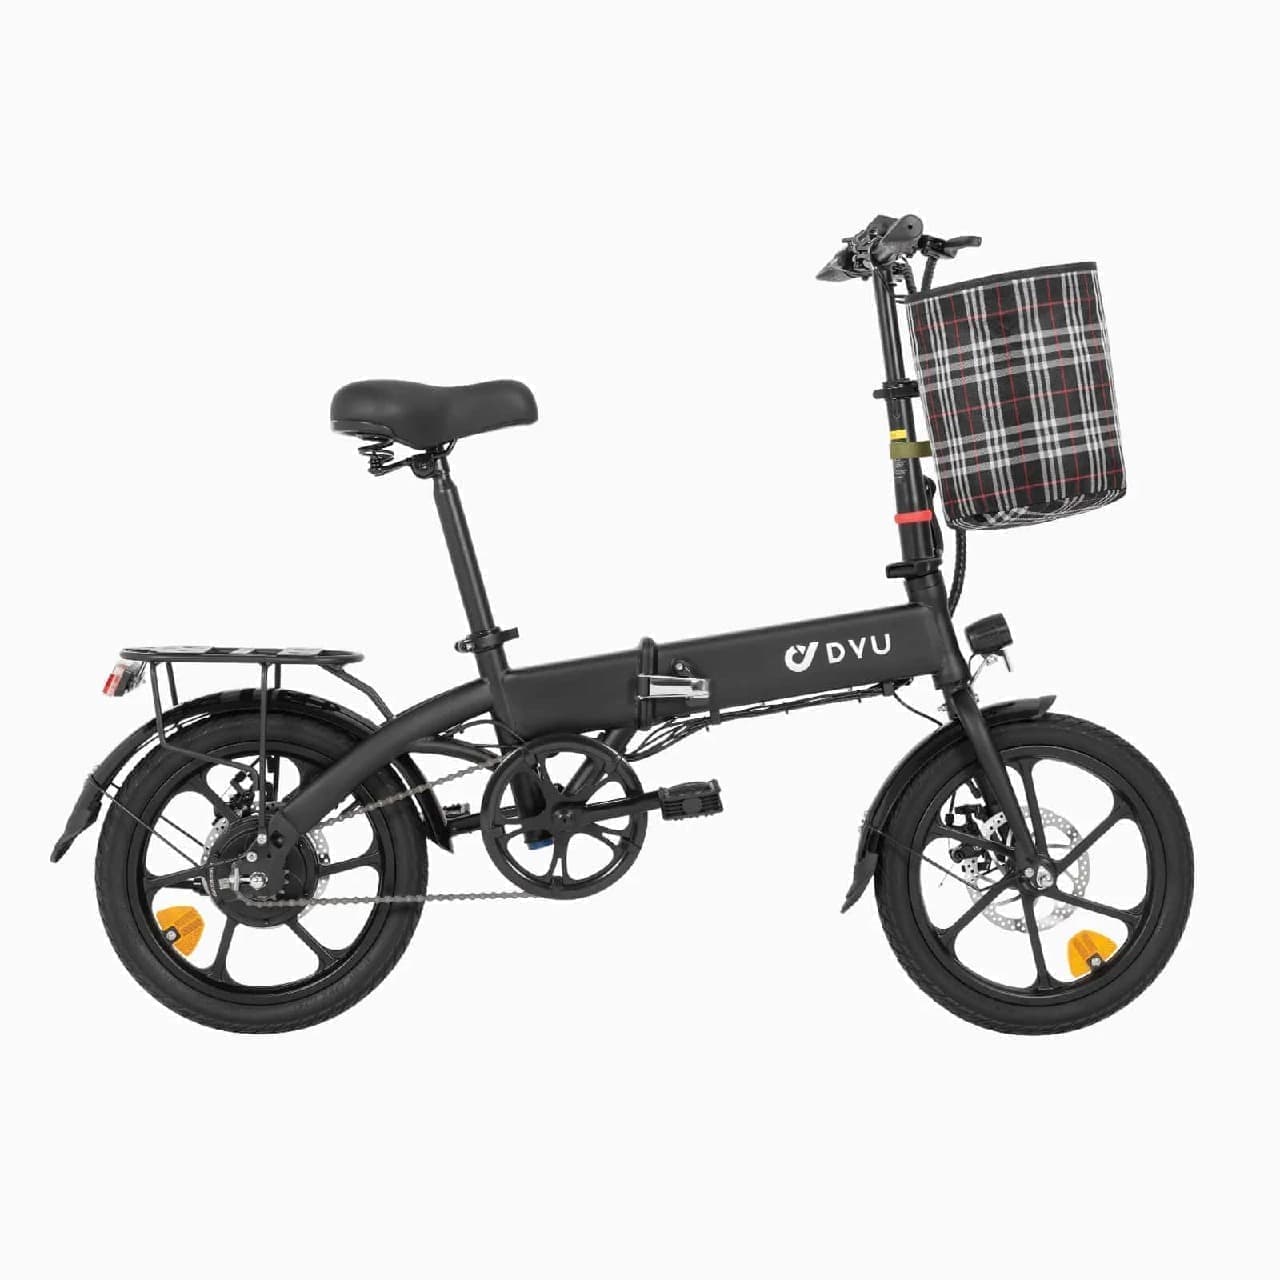 DYU 折りたたみ式電動自転車「A1F」を発売